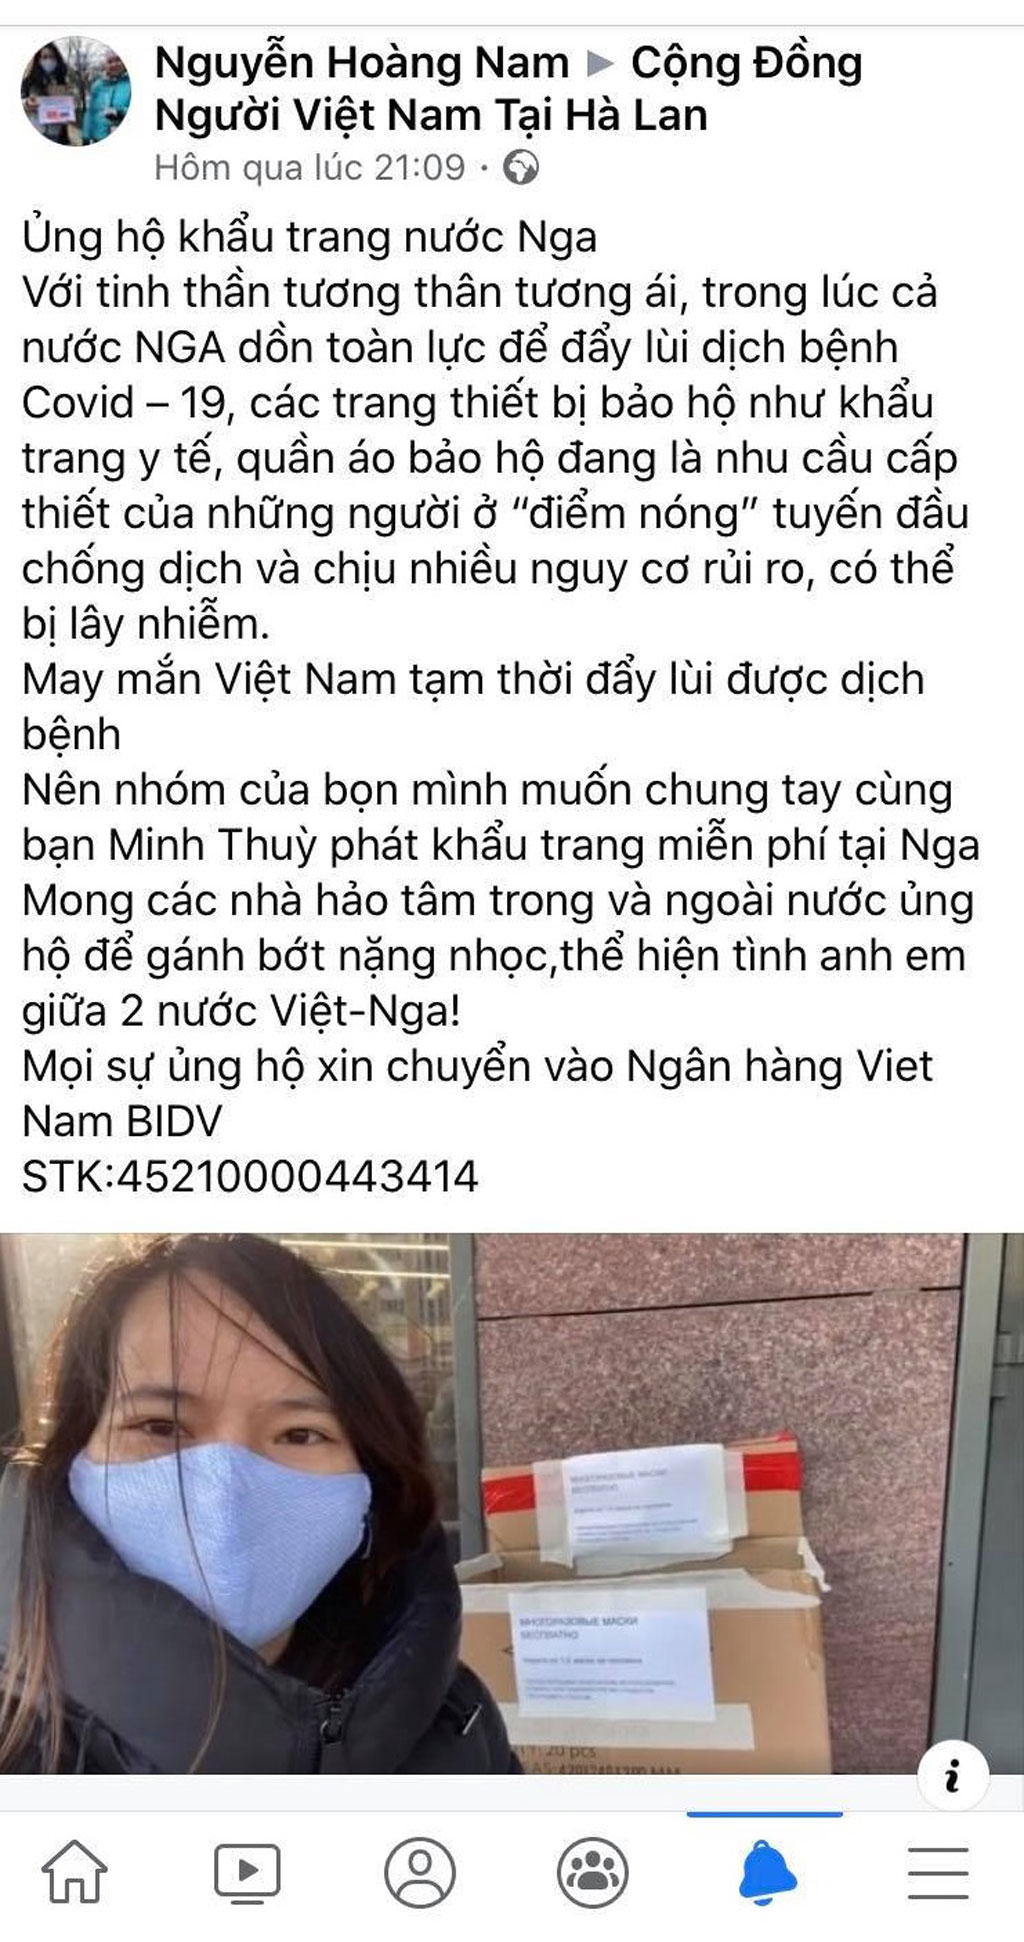 Cô gái Việt phát khẩu trang miễn phí ở Nga: Bức xúc tài khoản mạo danh kêu gọi quyên tiền3